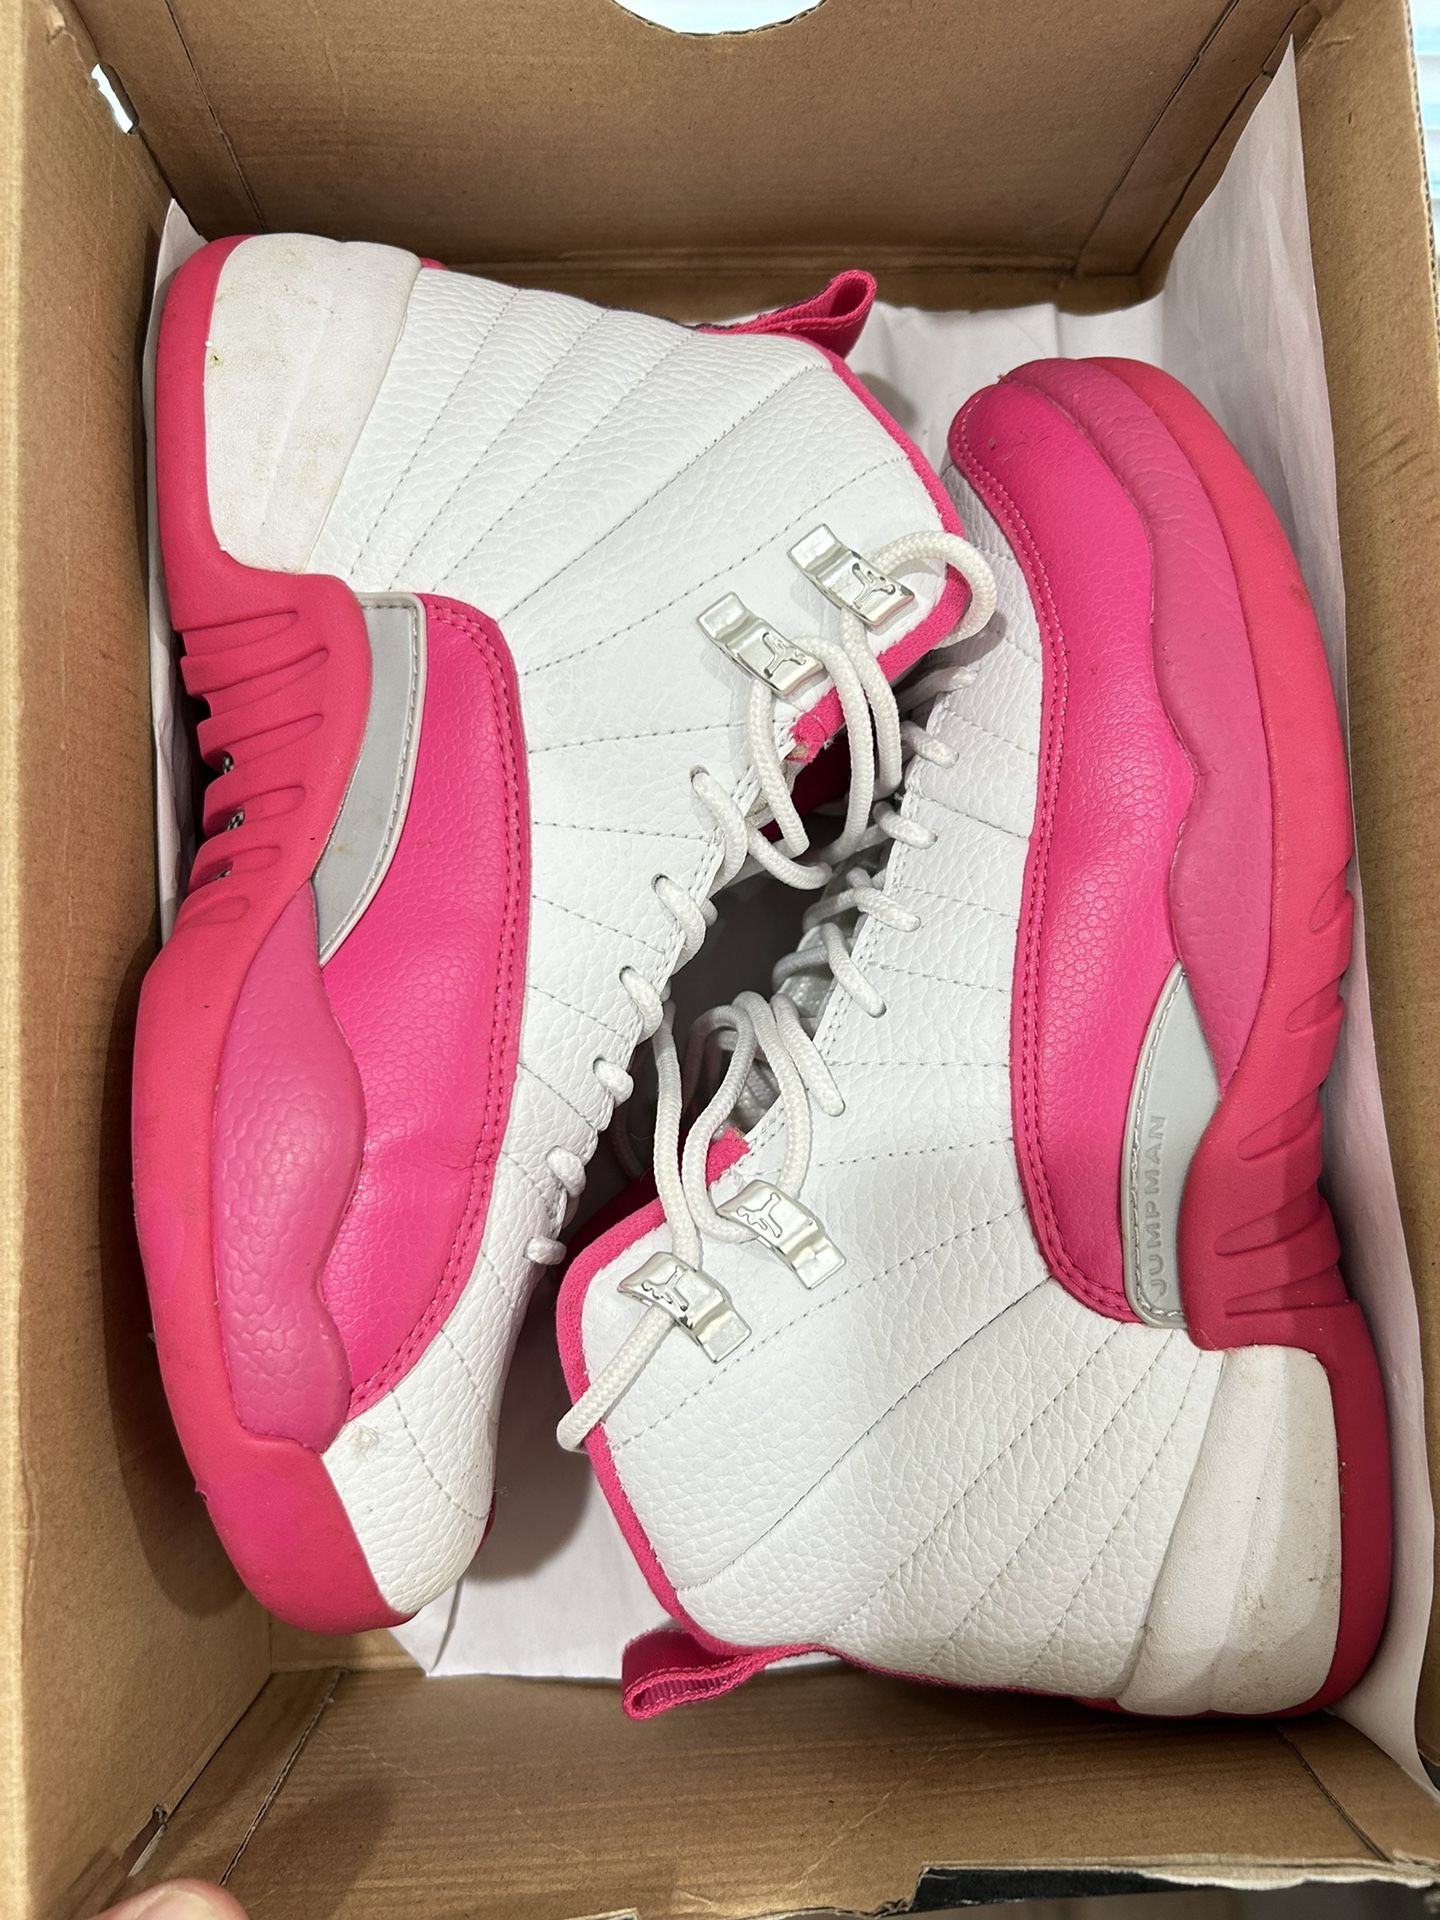 Jordan 12 “Vivid Pink” Size 5.5Y